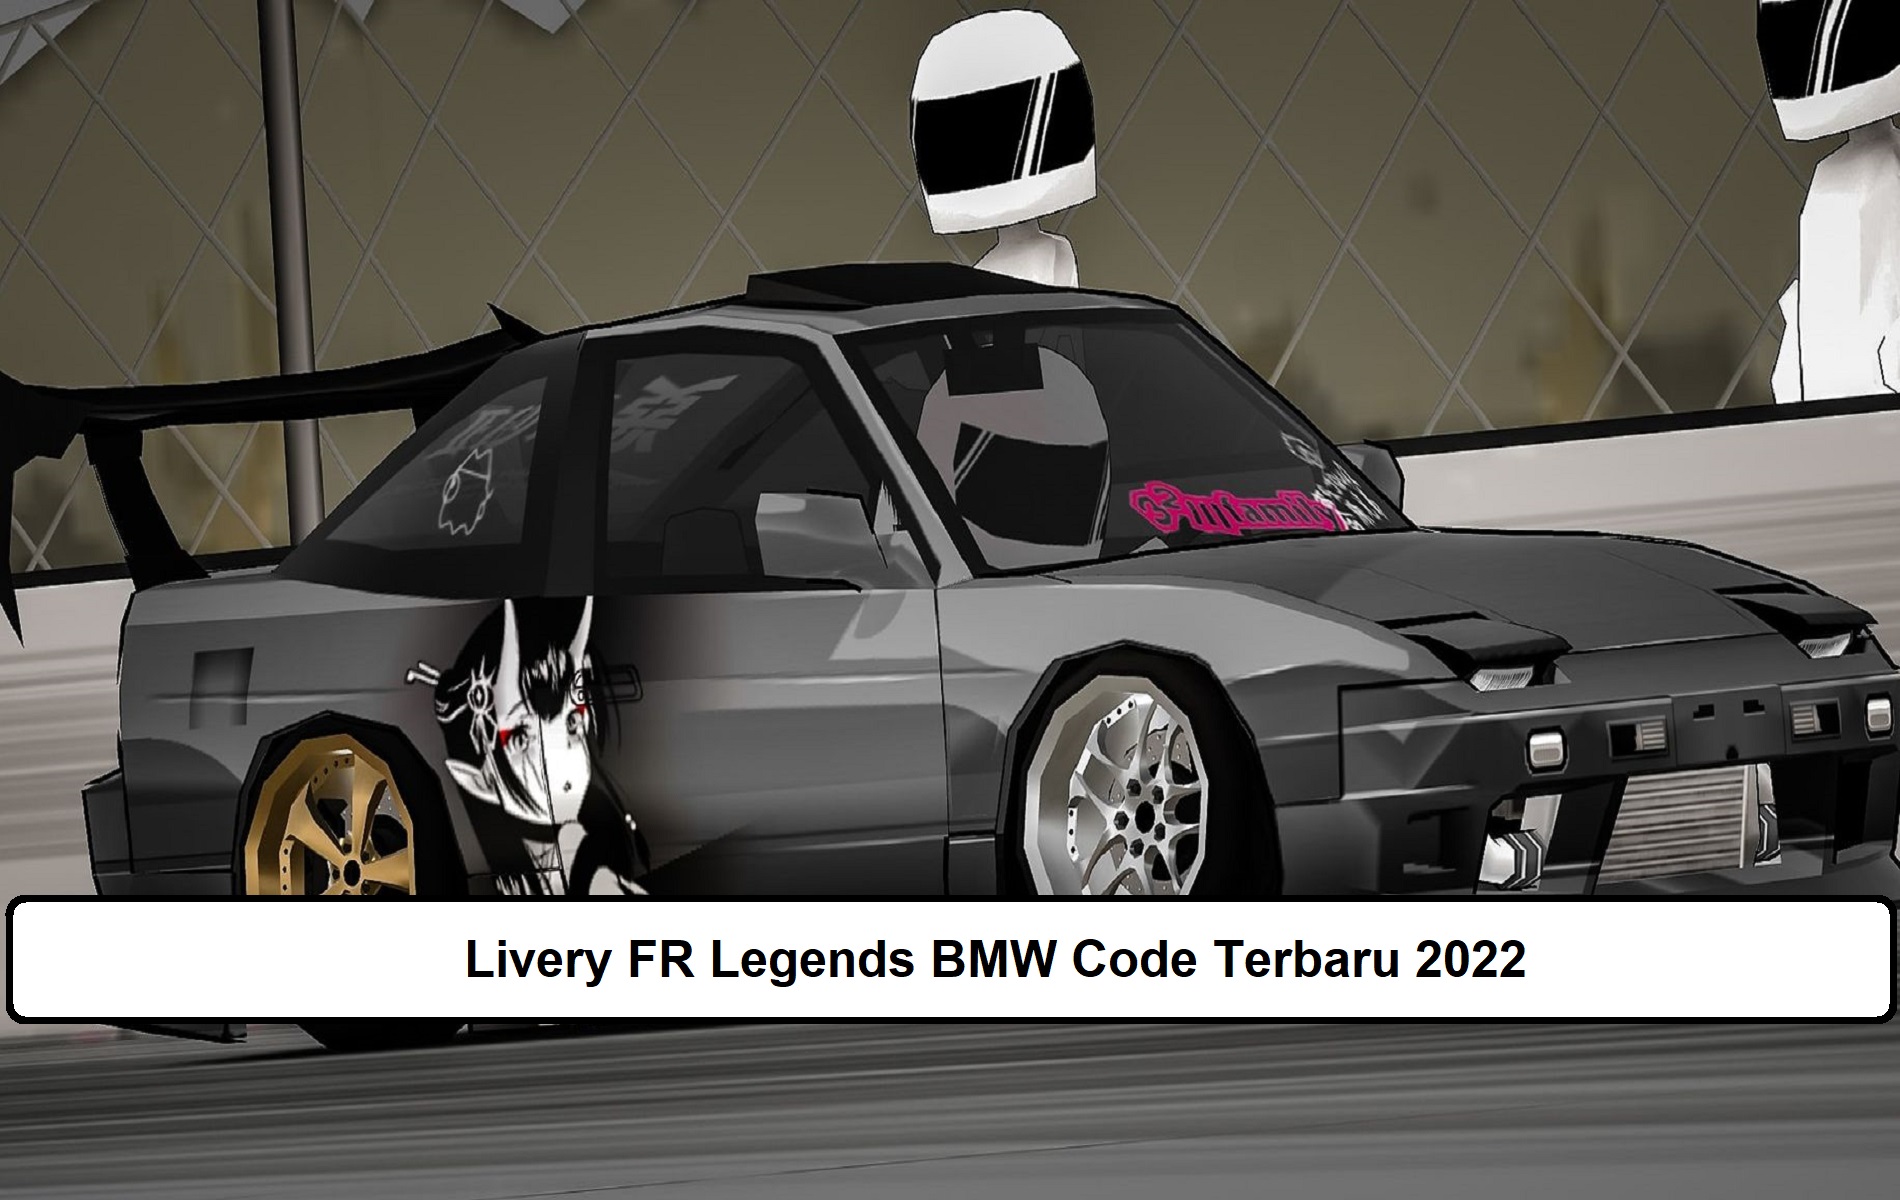 Livery FR Legends BMW Code Terbaru 2022